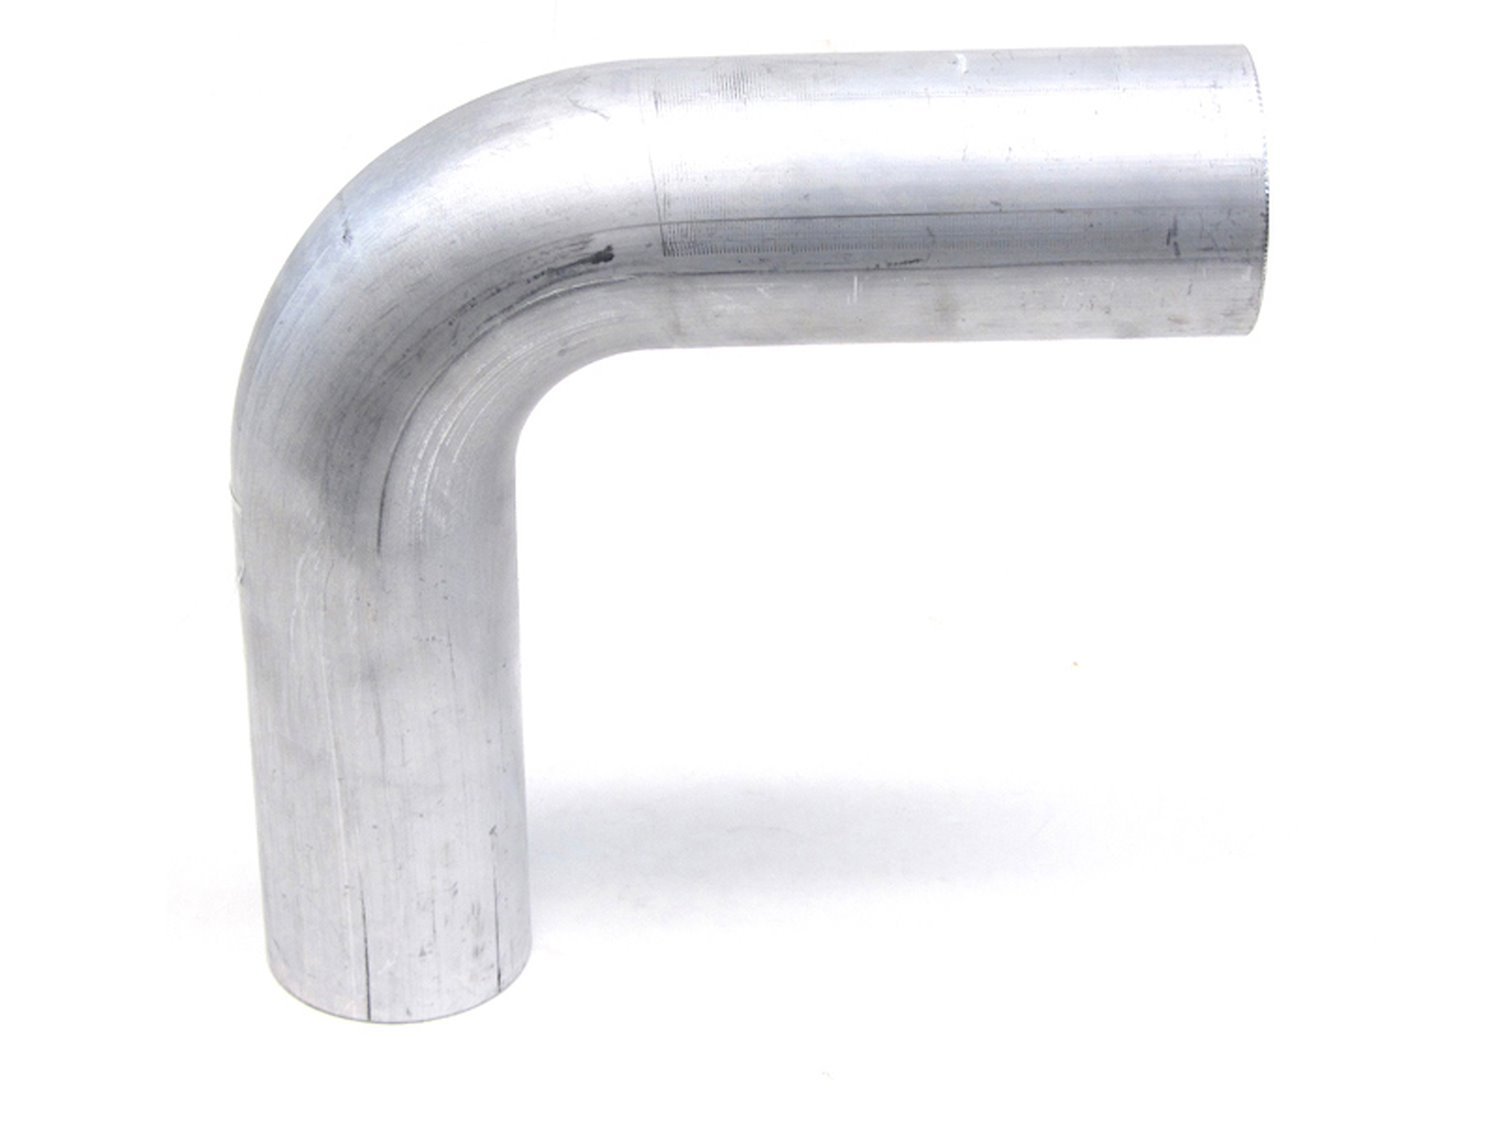 AT90-500-CLR-7 Aluminum Elbow Tube, 6061 Aluminum, 90-Degree Bend Elbow Tubing, 5 in. OD, Large Radius, 7 in. CLR